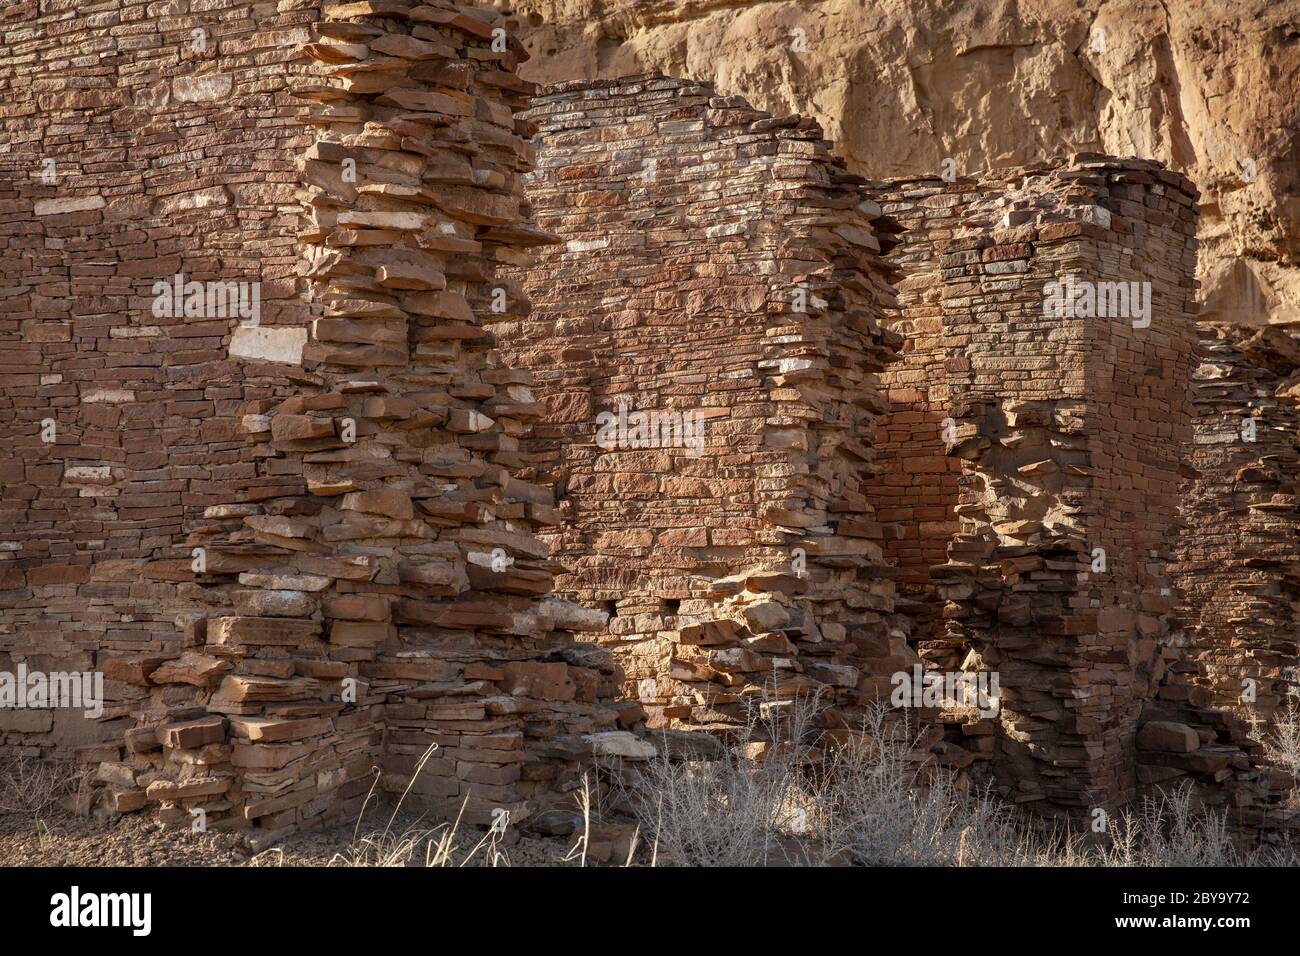 NM00601-00...NEW MEXICO - Mauerwerk Steinmauern in Wijiji von den frühen Chaco Menschen gebaut. Chaco Kultur National Historic Park. Stockfoto